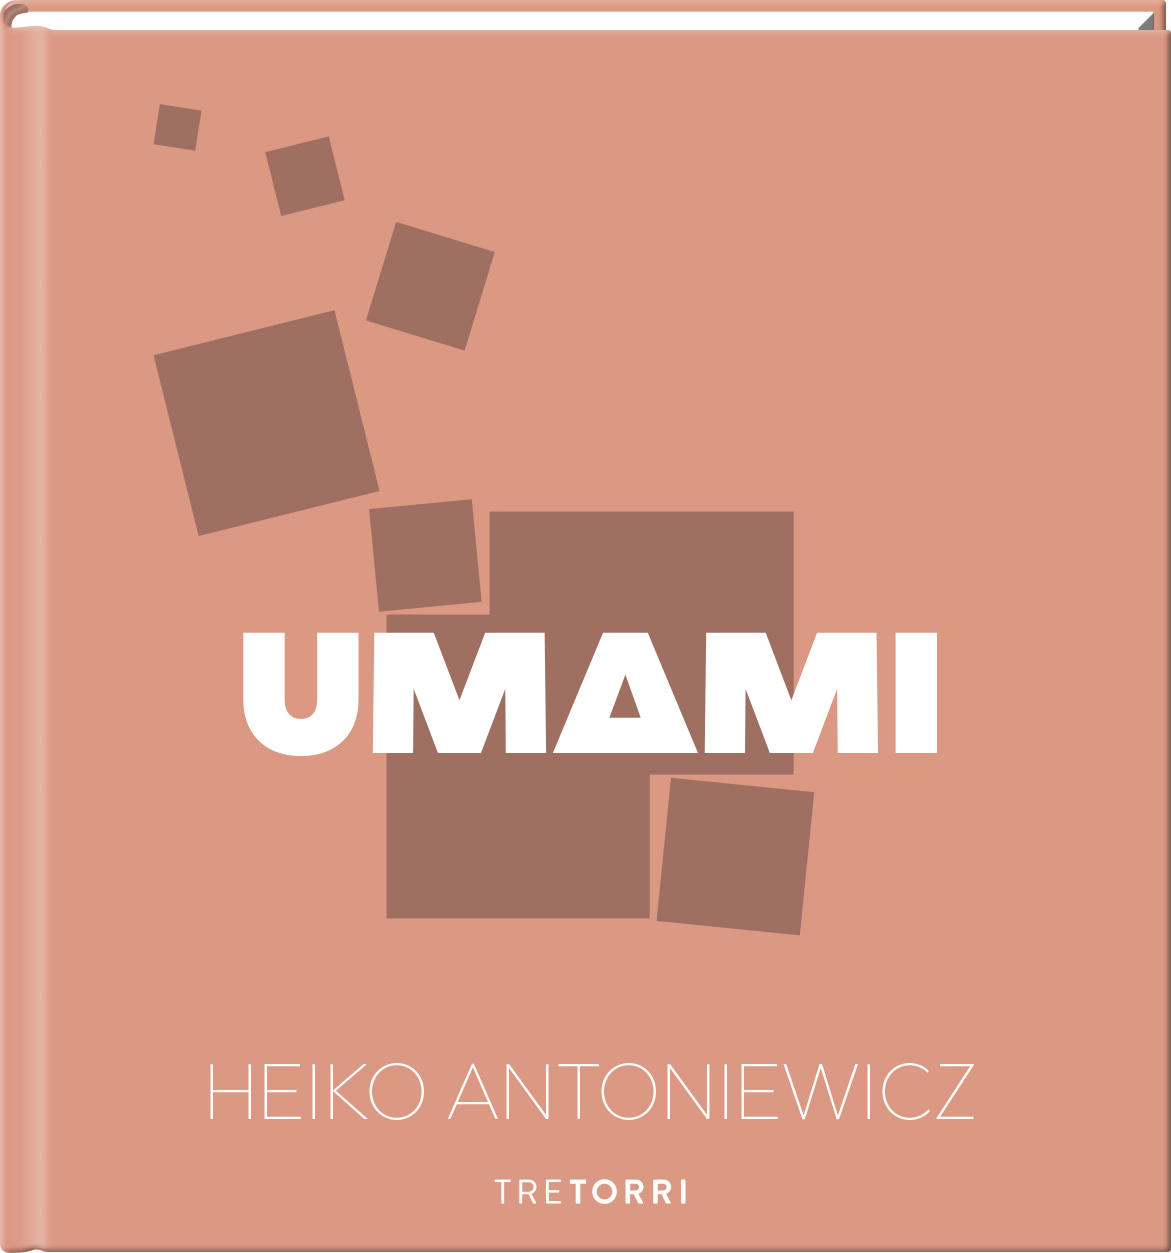 Heiko Antoniewicz, UMAMI